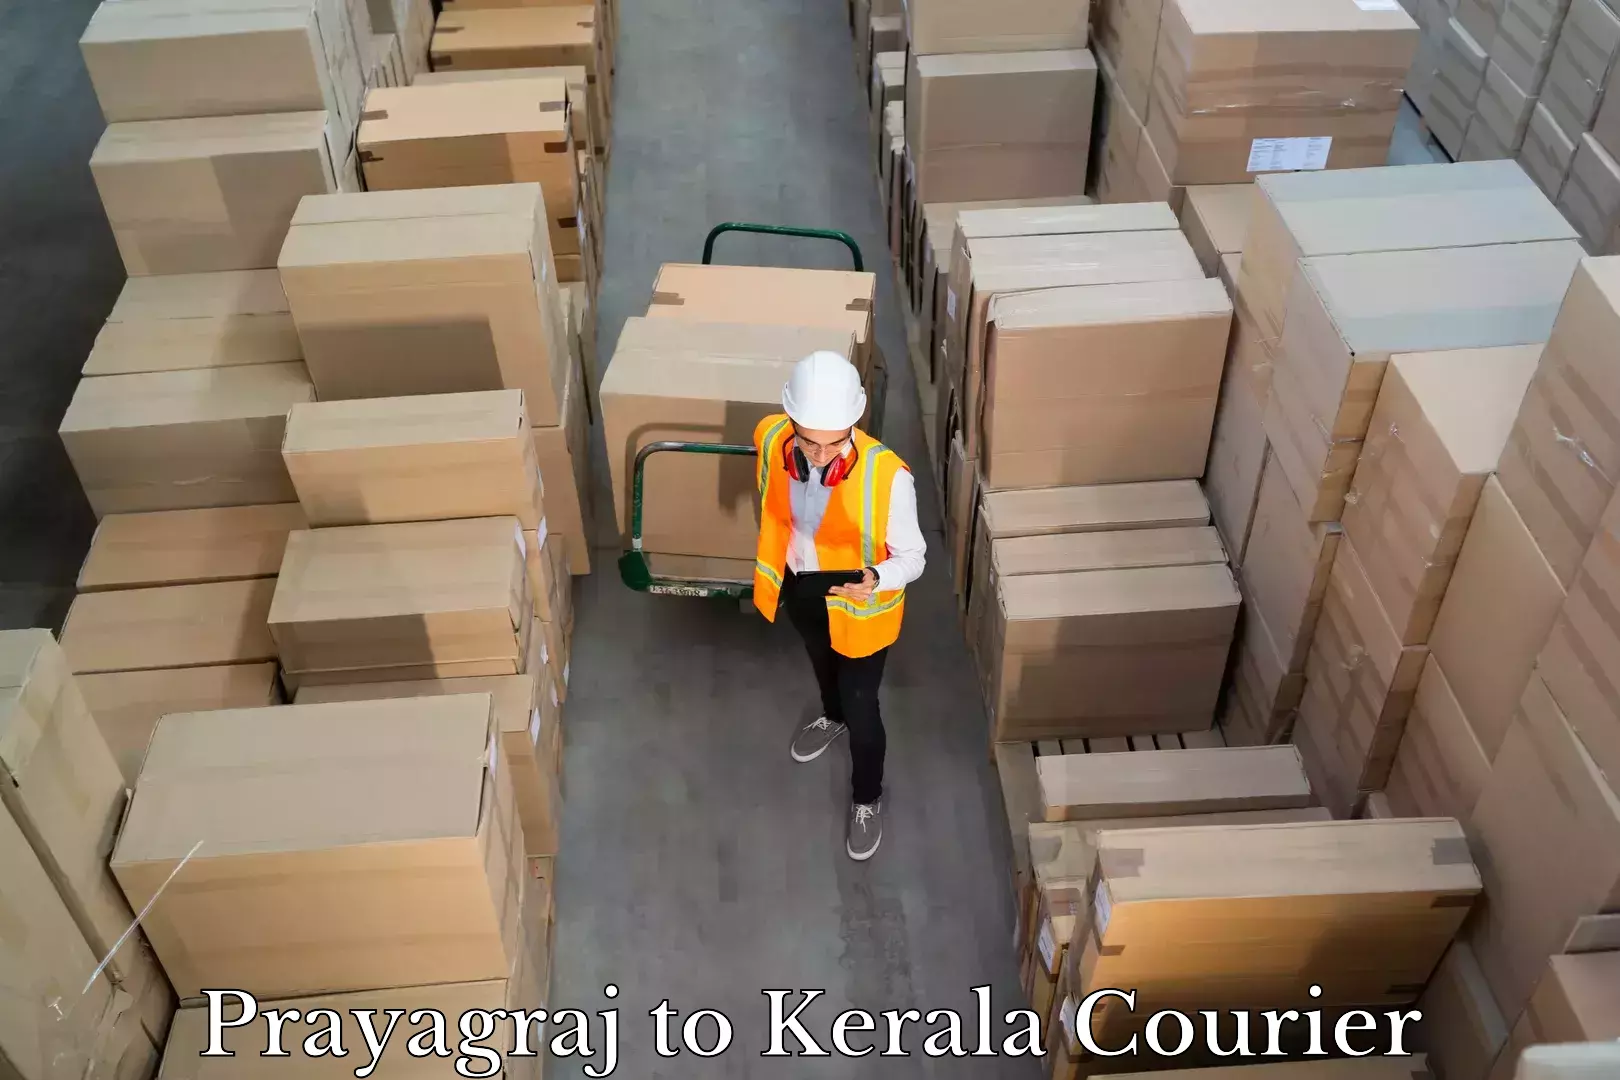 Luggage delivery network Prayagraj to Kottarakkara